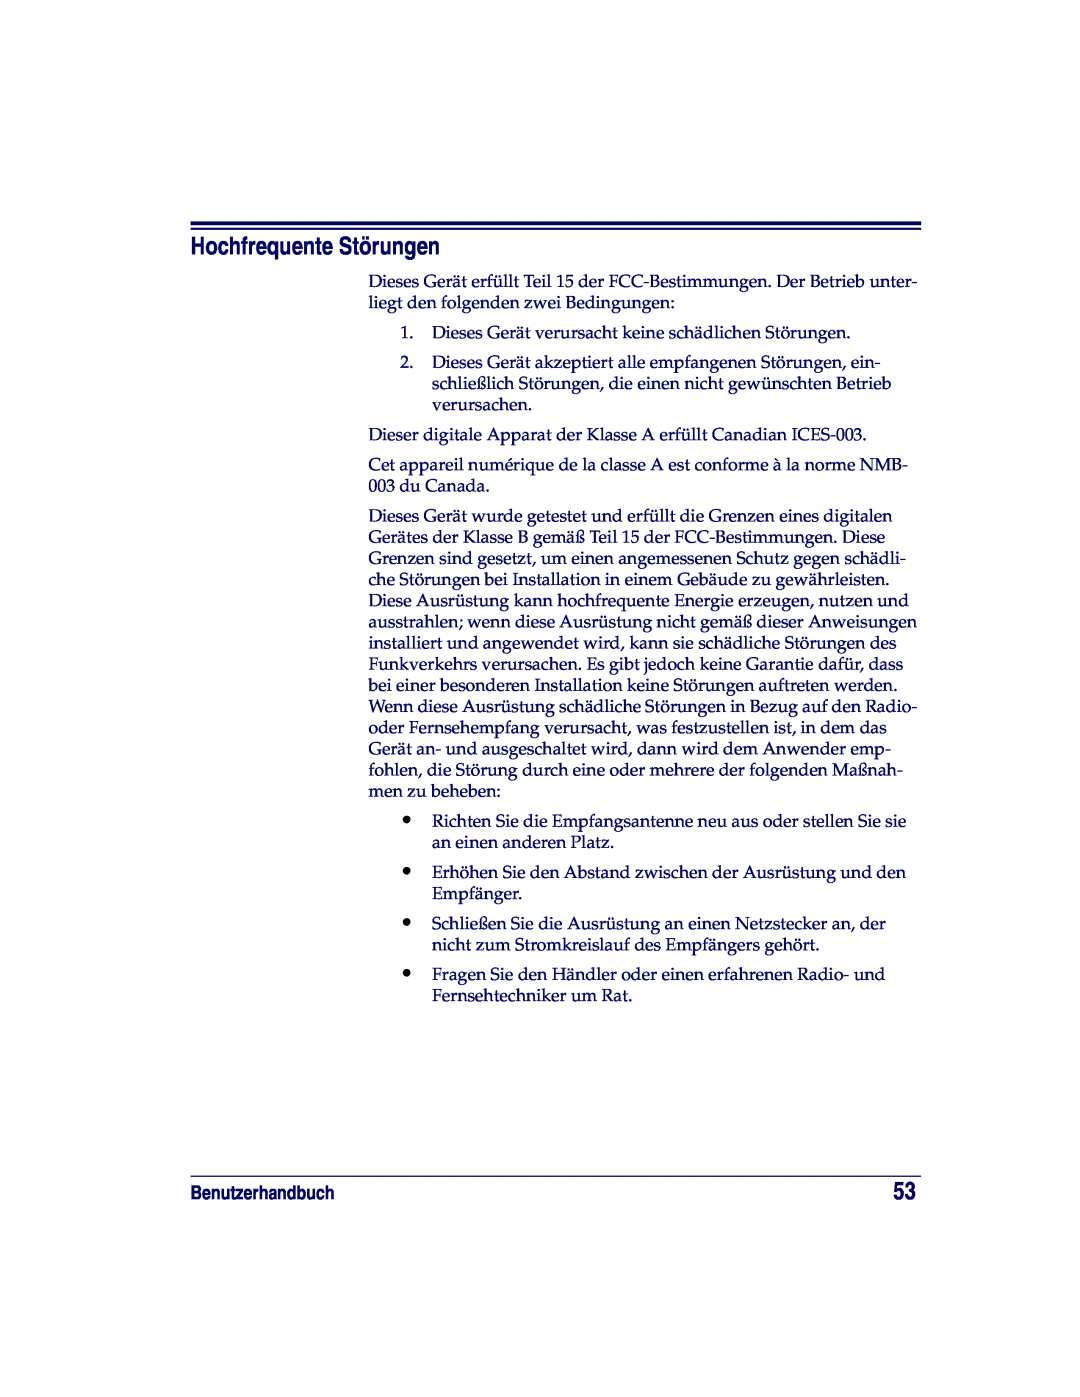 Datalogic Scanning XLR, SR, HD manual Hochfrequente Störungen, Benutzerhandbuch 